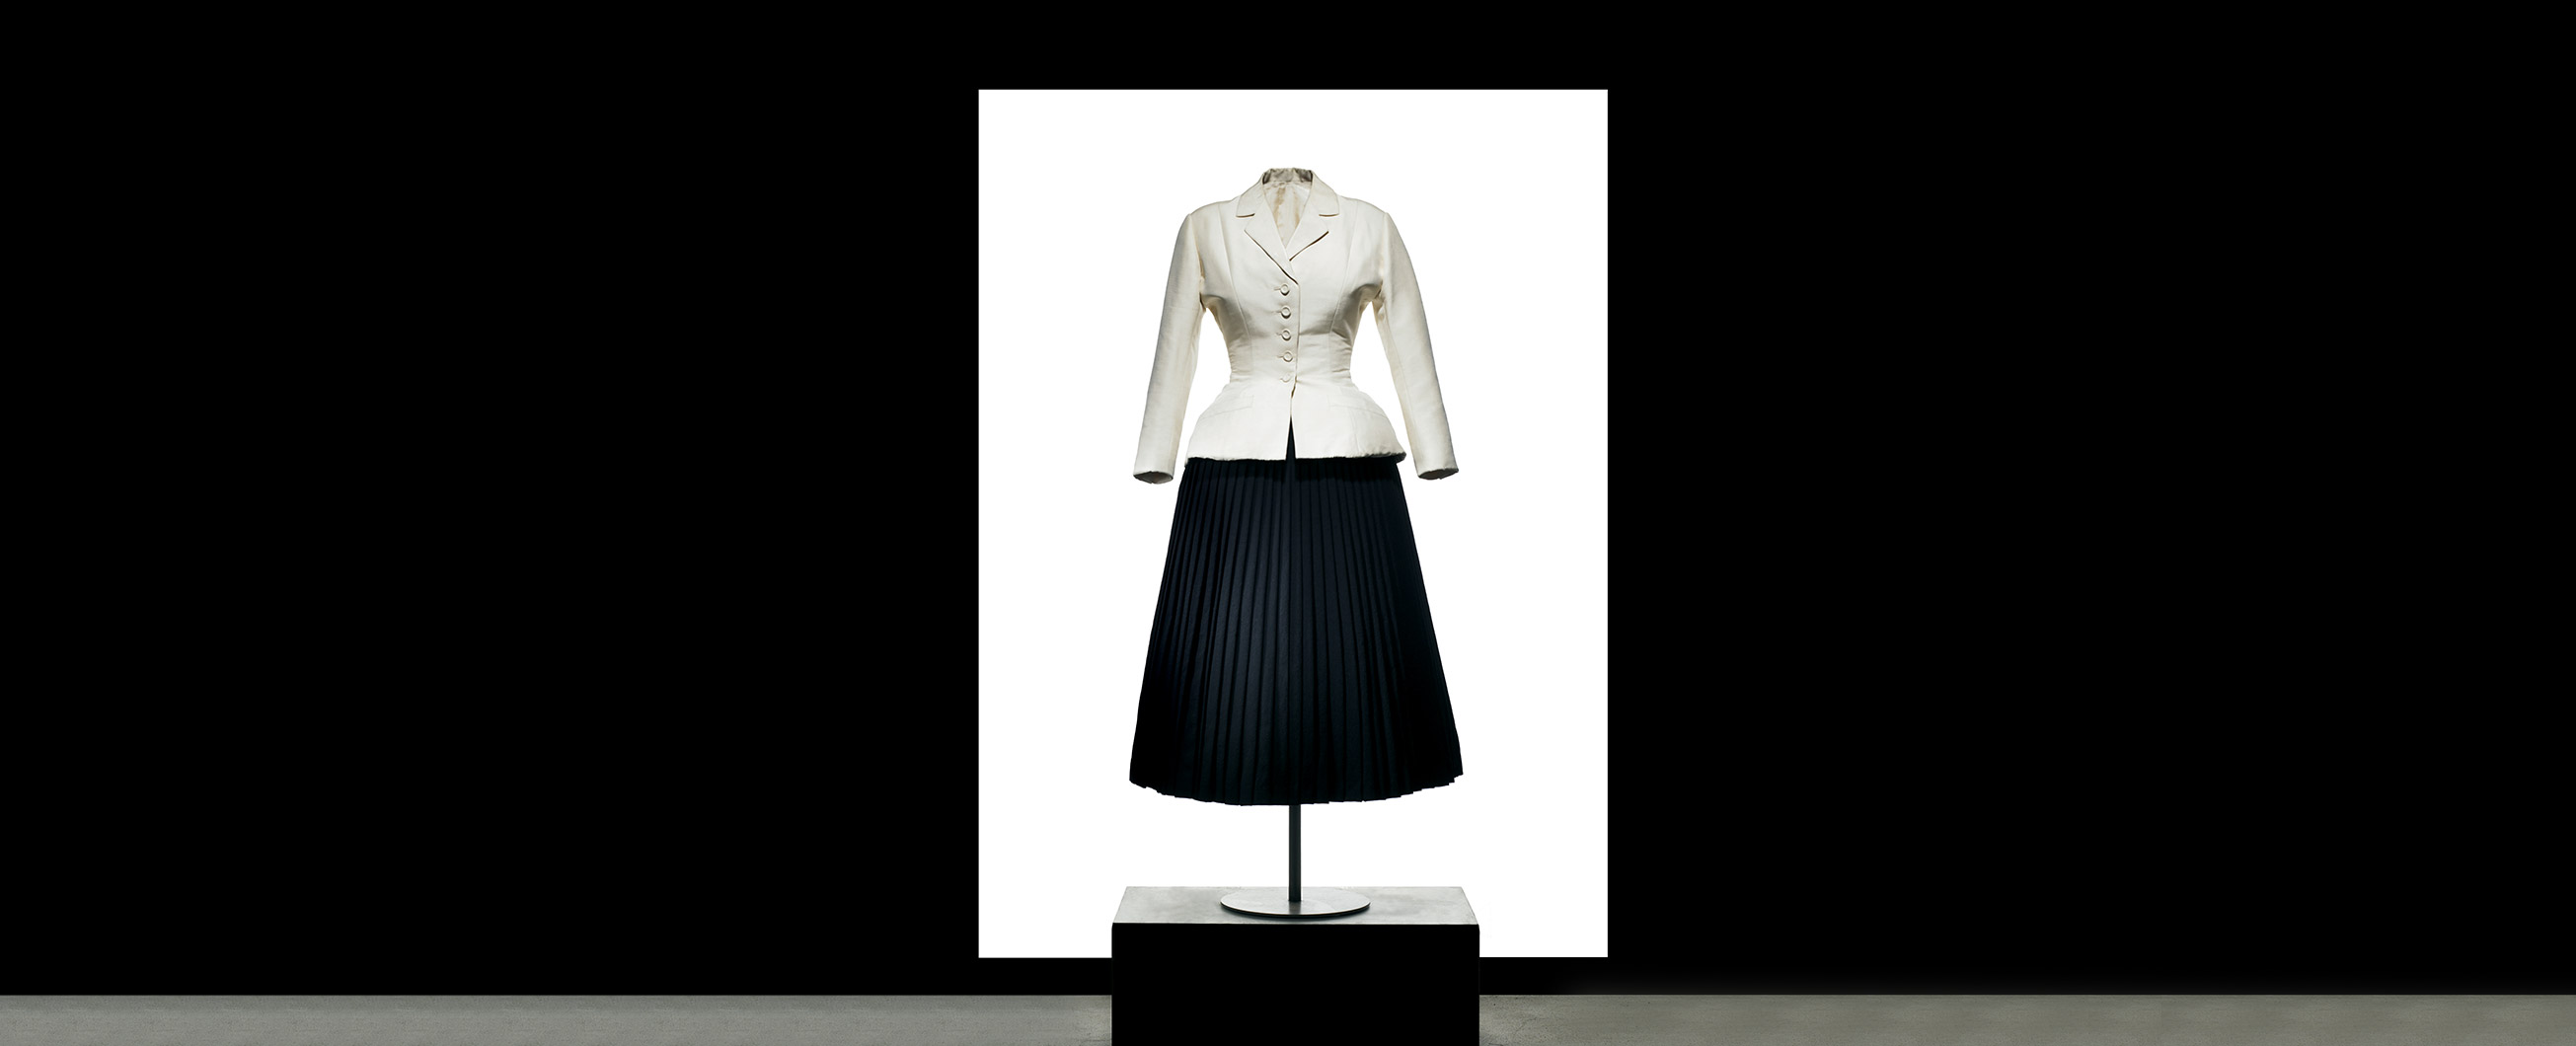 Кристиан Диор и стиль New Look: как достичь эталона красоты при помощи одежды